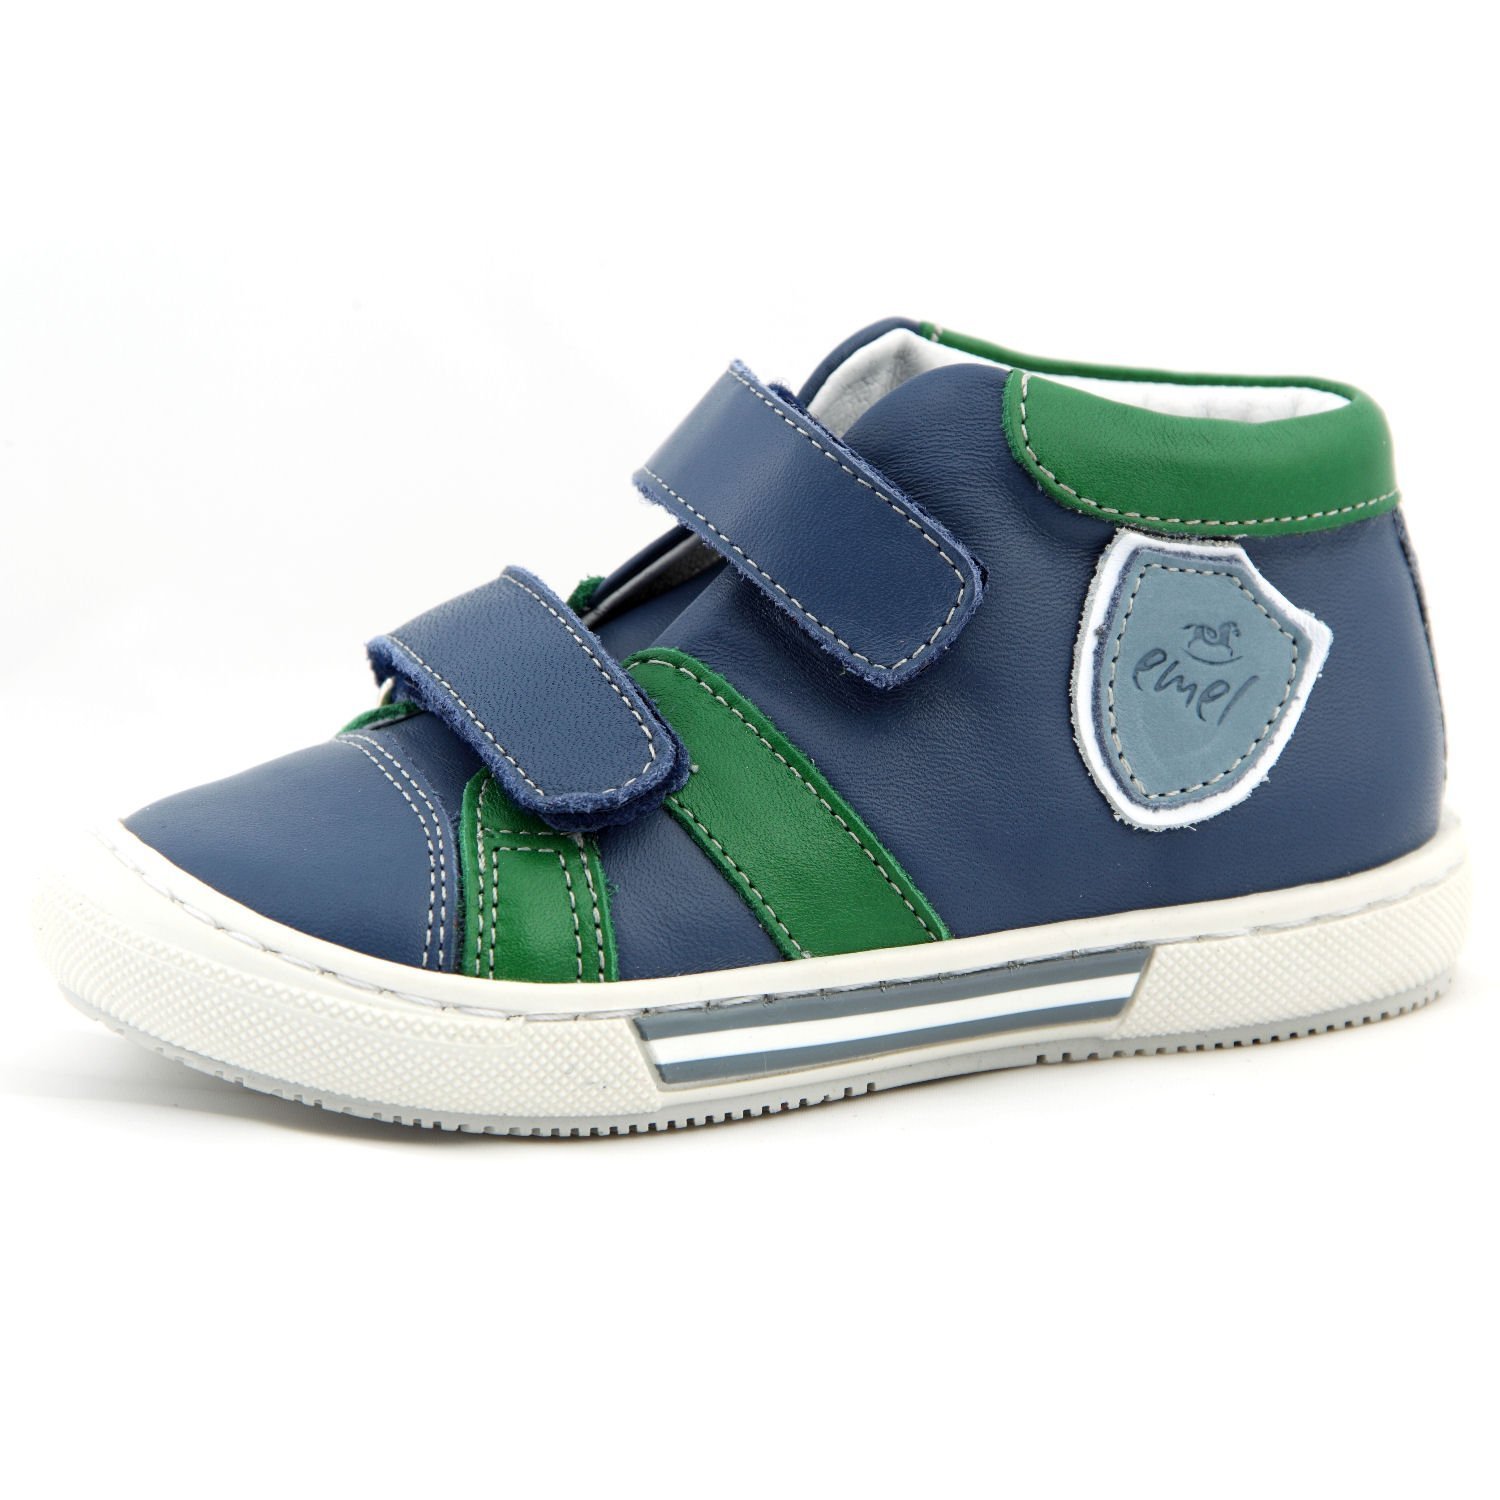 Kinderschuhe Sportschuhe Sneaker Lauflernschuhe blau grün Modell Emel 2451-2 handmade (20)